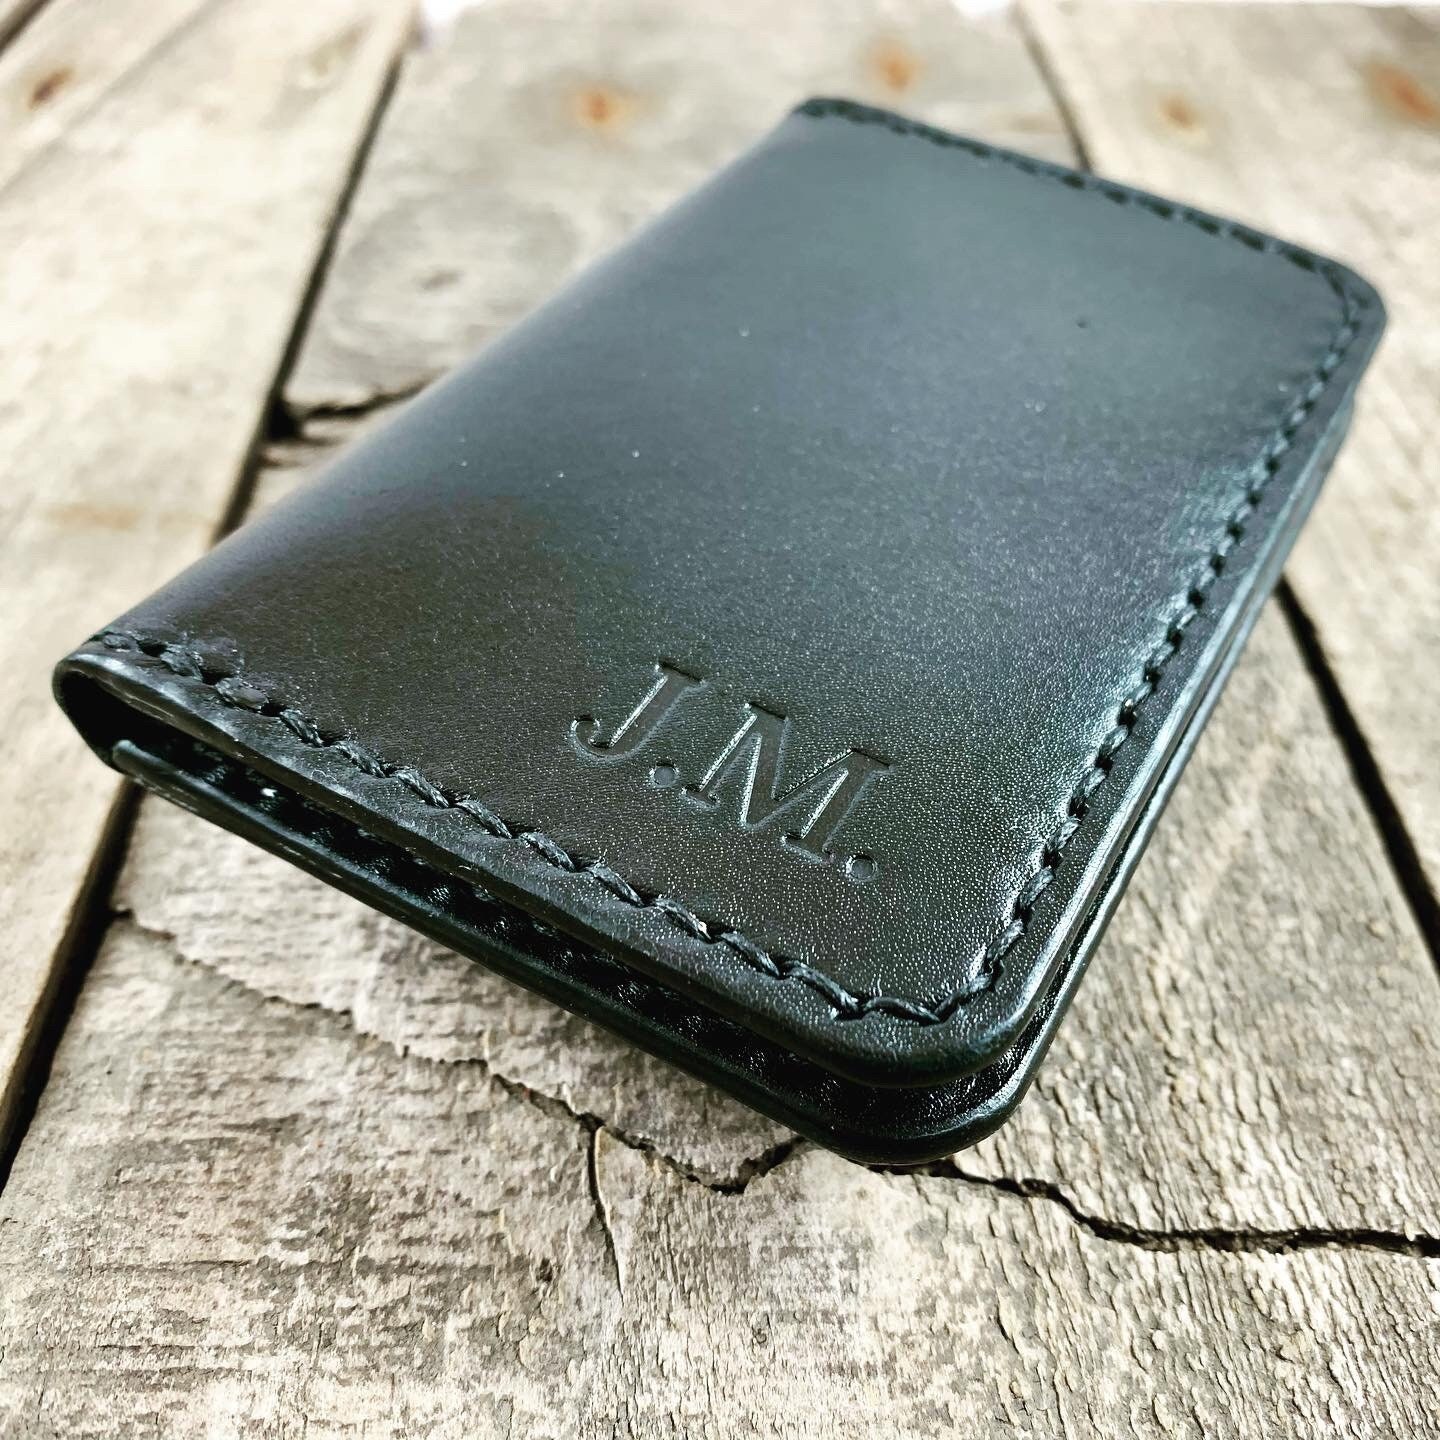 Kangaroo Leather Bi-Fold Vertical Wallet